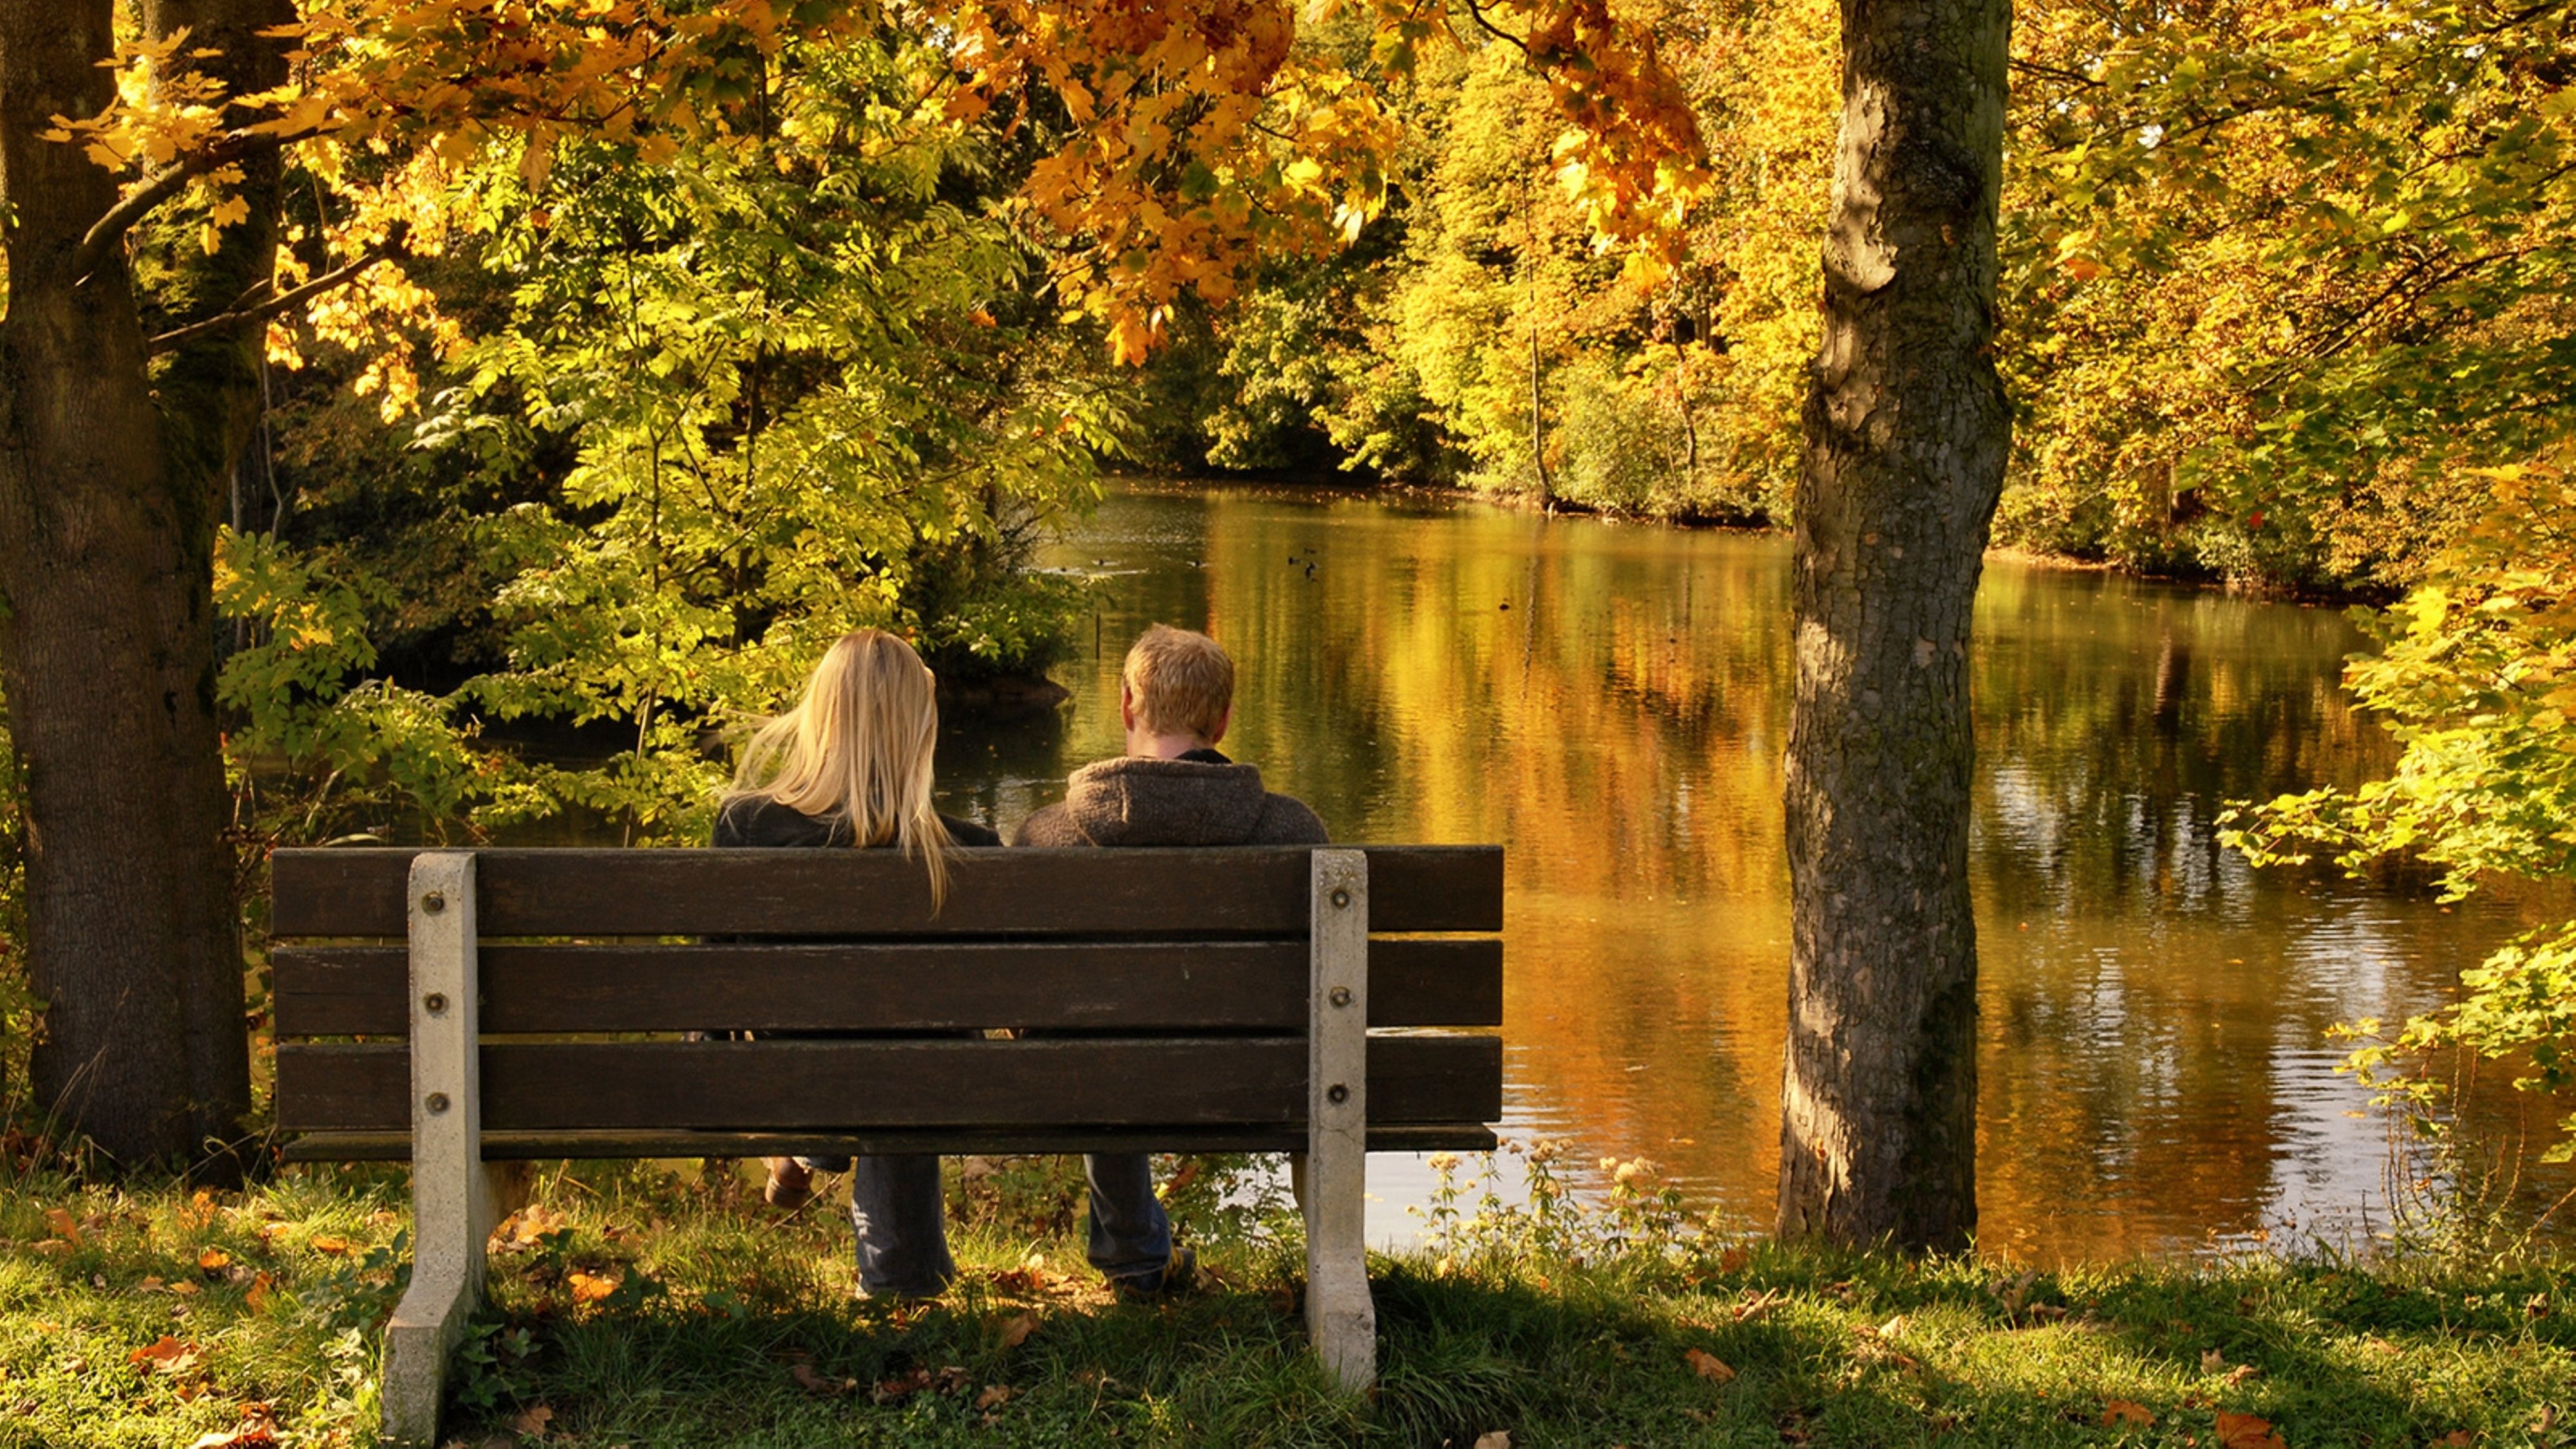 Wallpaper. Golden autumn. photo. picture. Park, the pond, bench, a couple, autumn